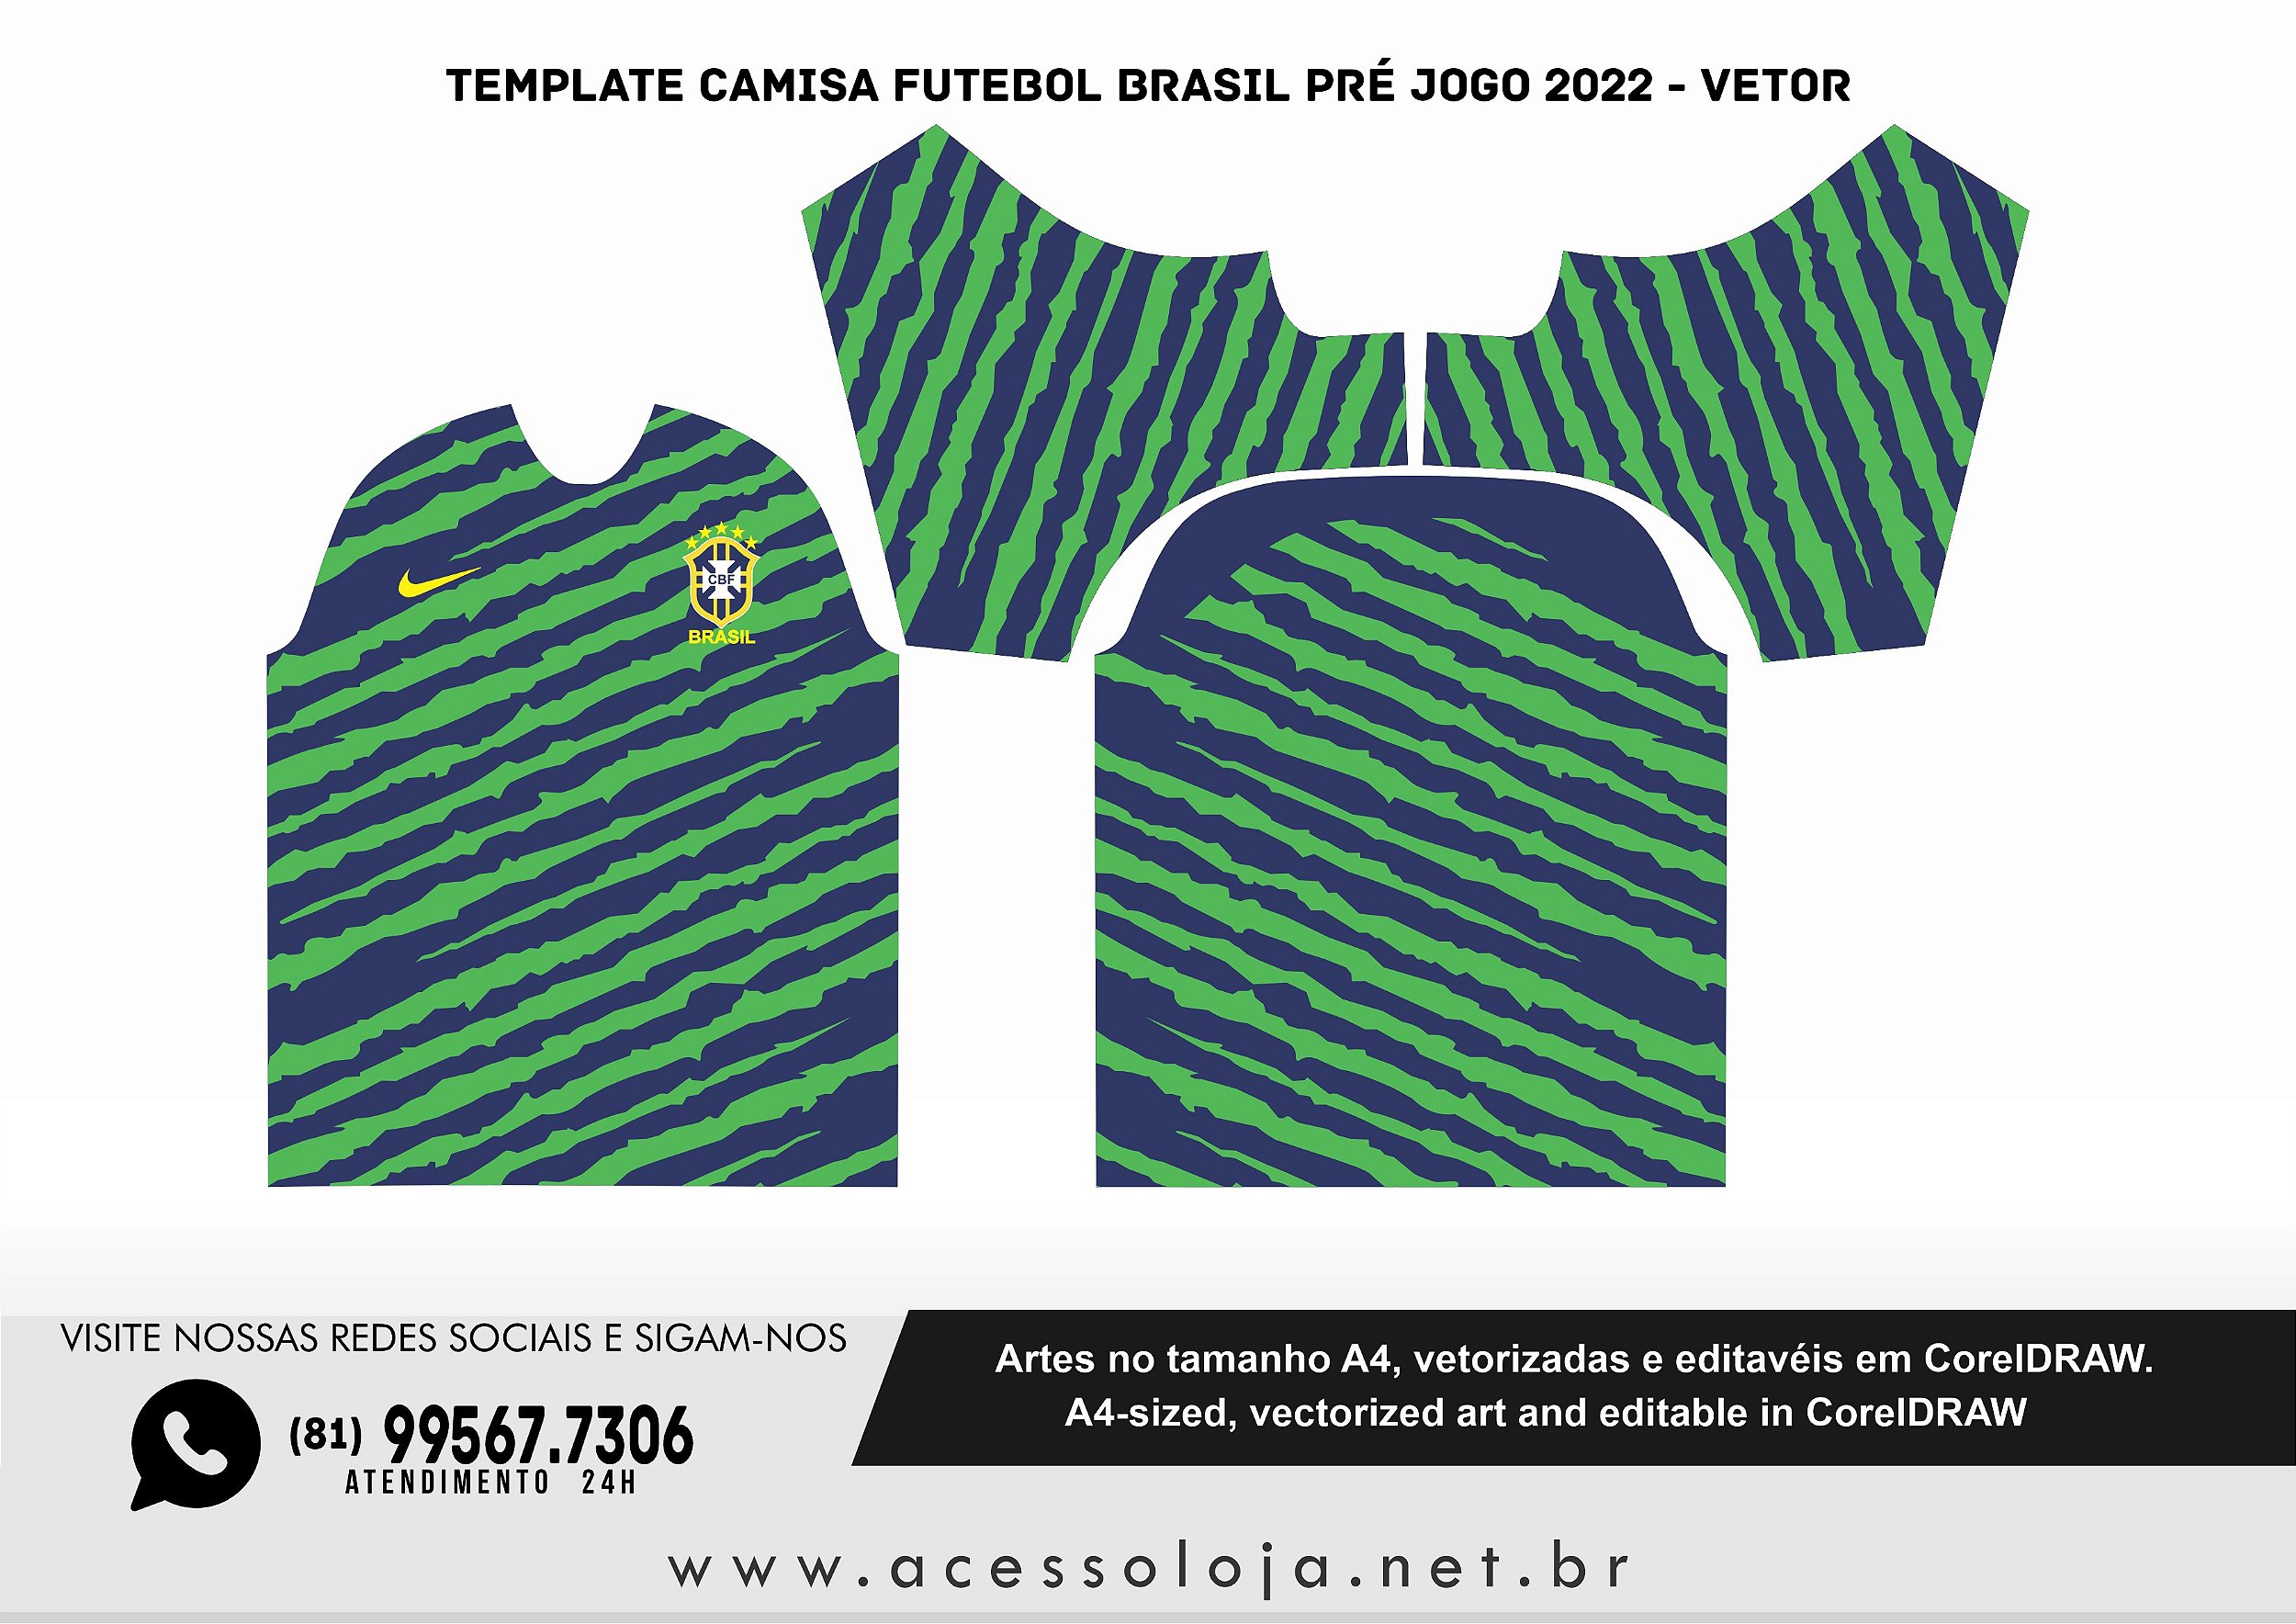 Template Camisa Futebol brasil pré jogo 2022 - Vetor - Acesso Loja